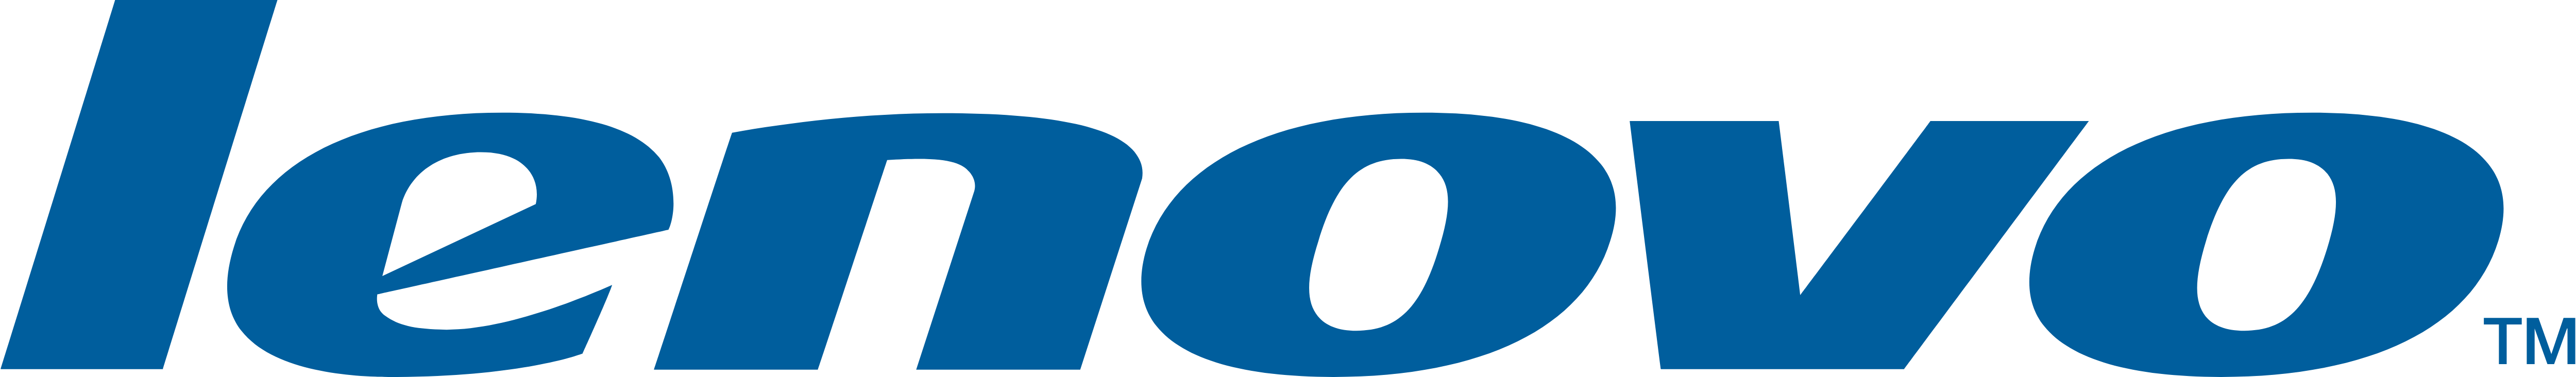 Lenovo Logo - Lenovo – Logos Download